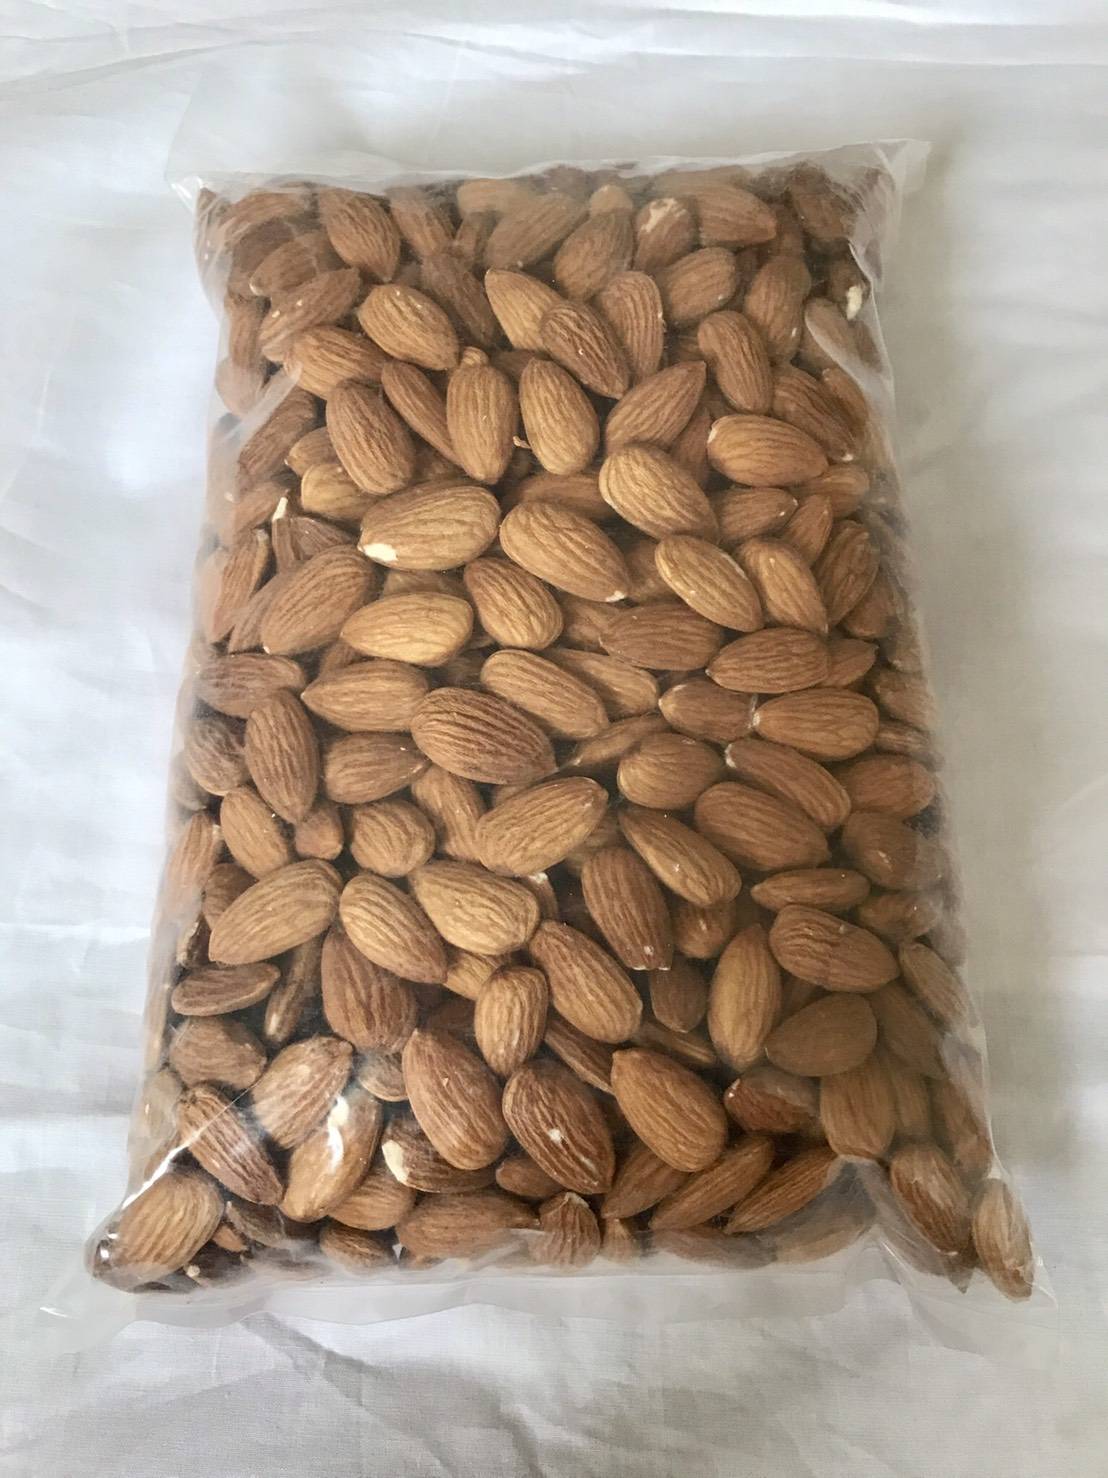 อัลมอนด์ดิบ / Raw natural whole almonds นำเข้าจากอเมริกา คัดพิเศษ ขนาดบรรจุ 1000 กรัม Import from USA net weight 1 kg.(R0024)